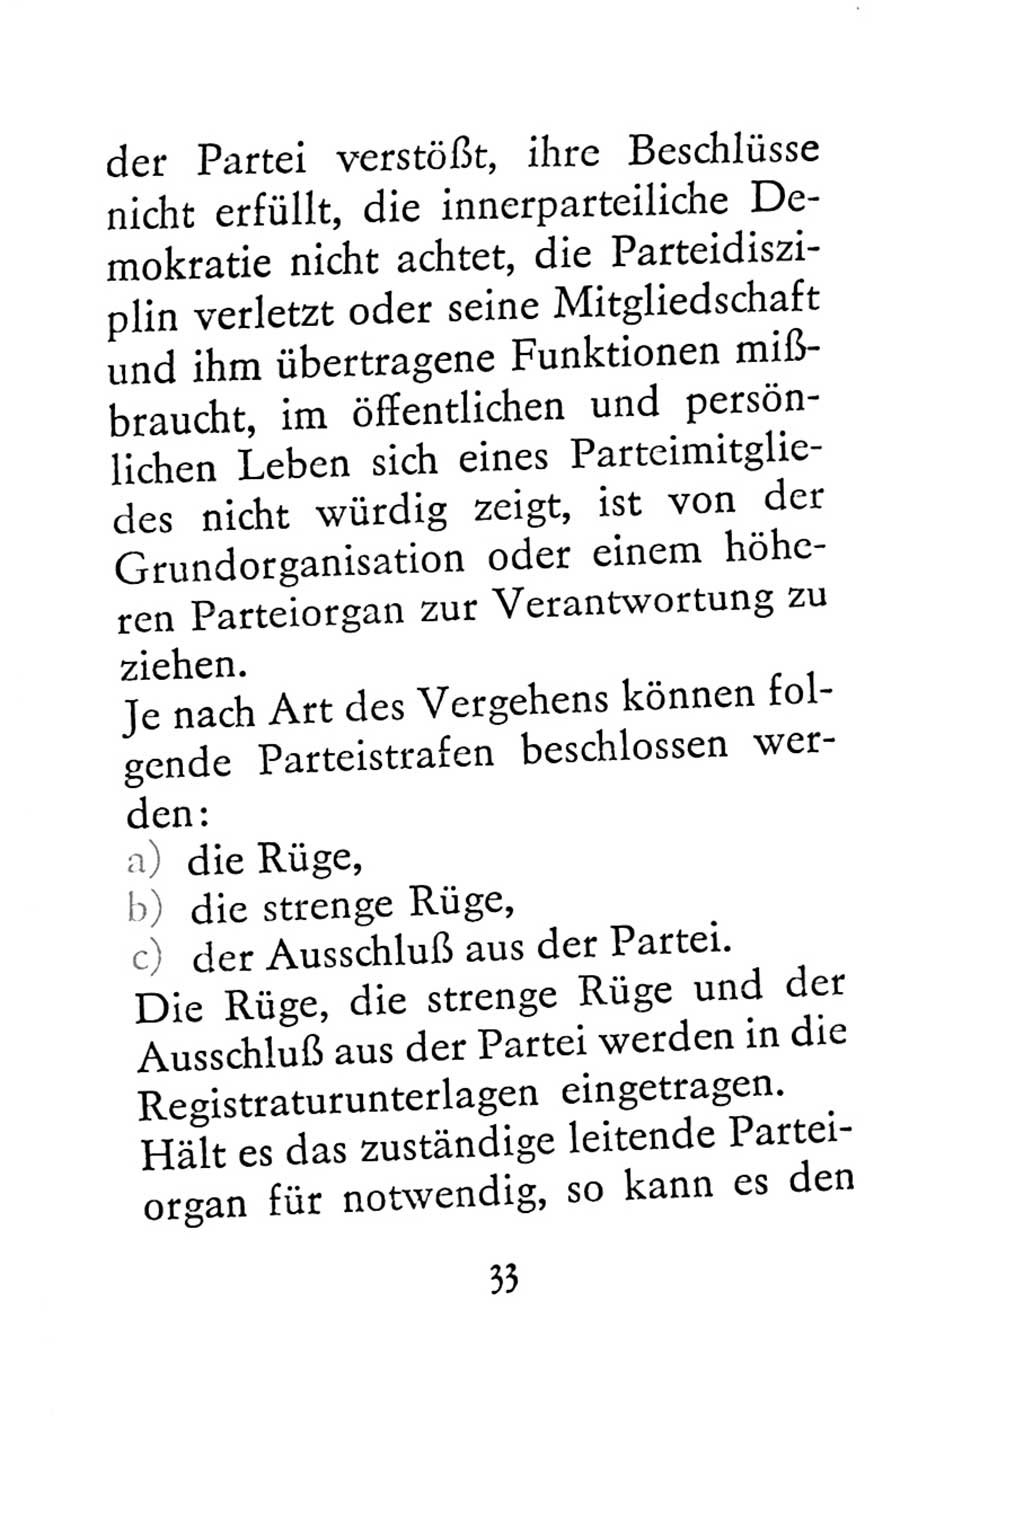 Statut der Sozialistischen Einheitspartei Deutschlands (SED) 1967, Seite 33 (St. SED DDR 1967, S. 33)